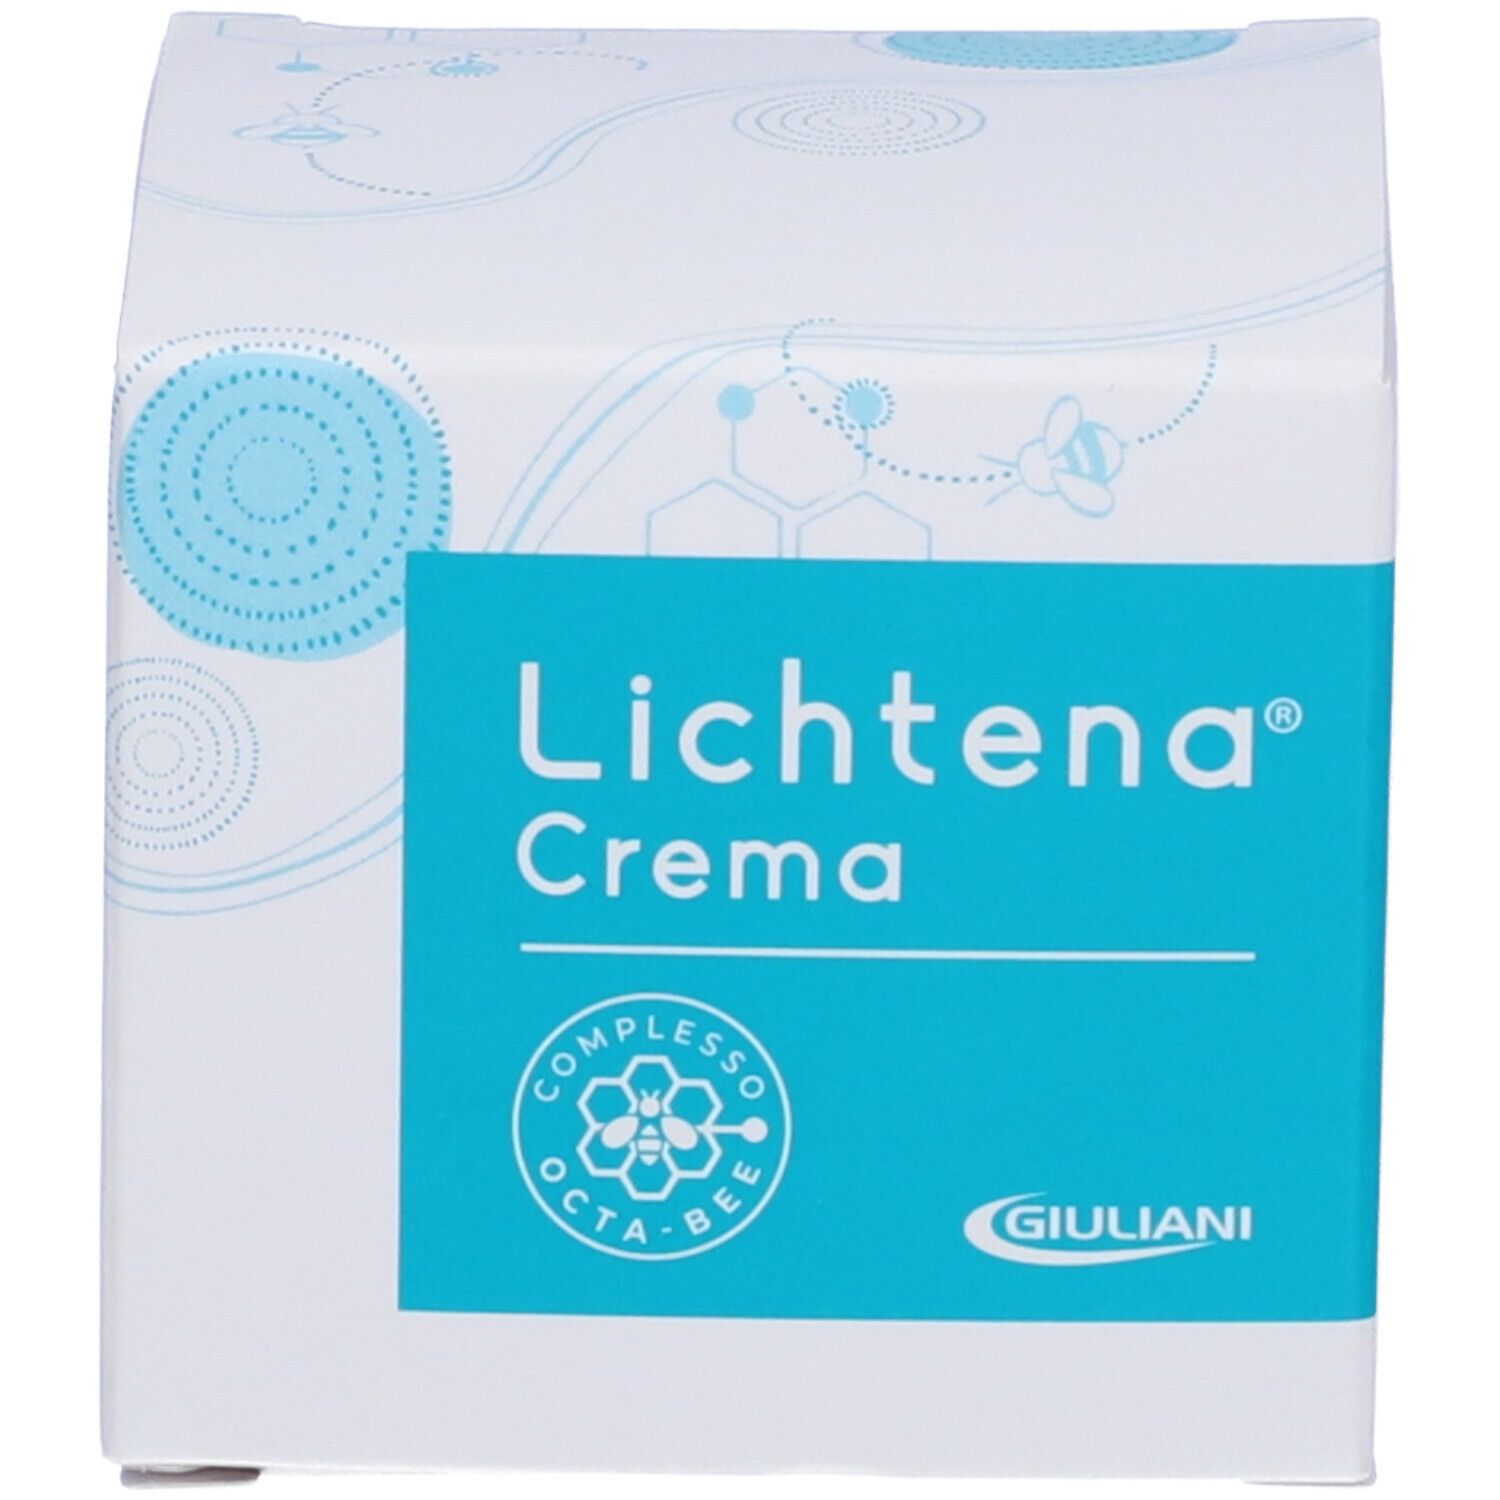 LICHTENA® Crema Complesso Octa-BEE